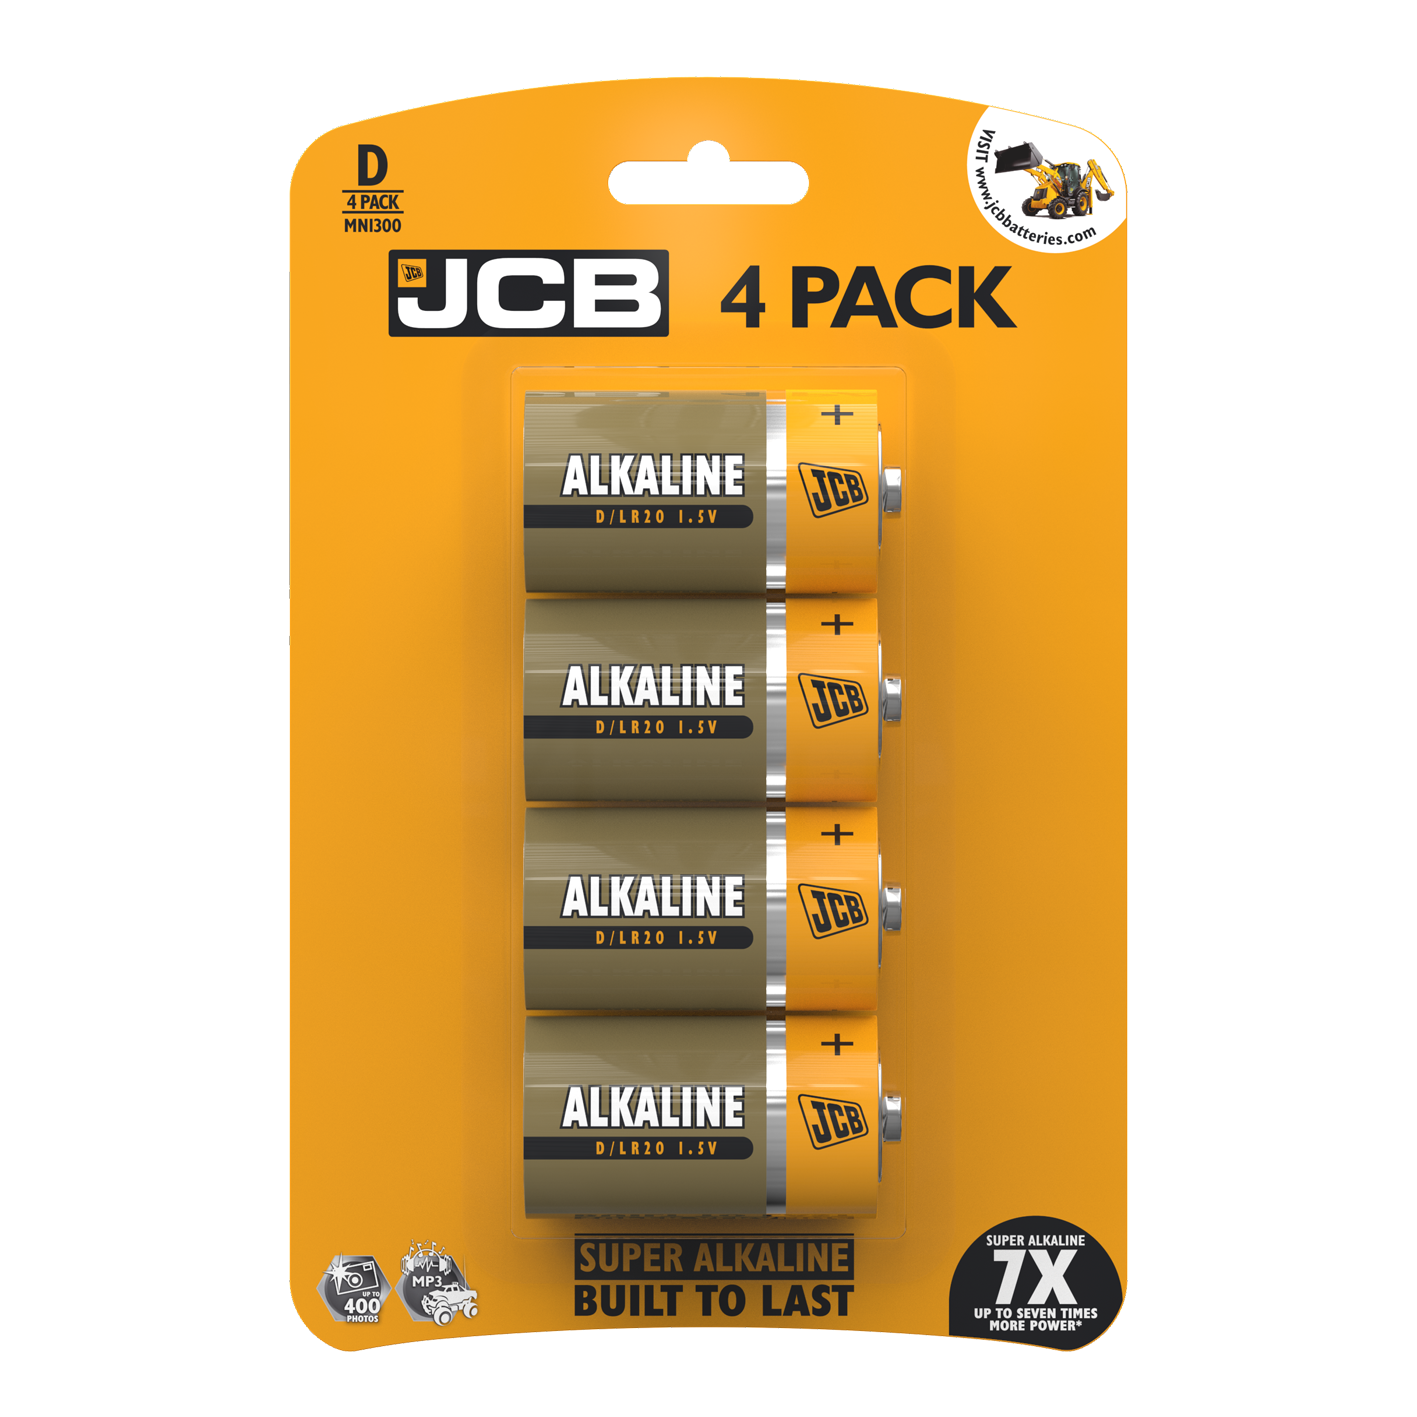 JCB D Size Super Alkaline, Pack of 4